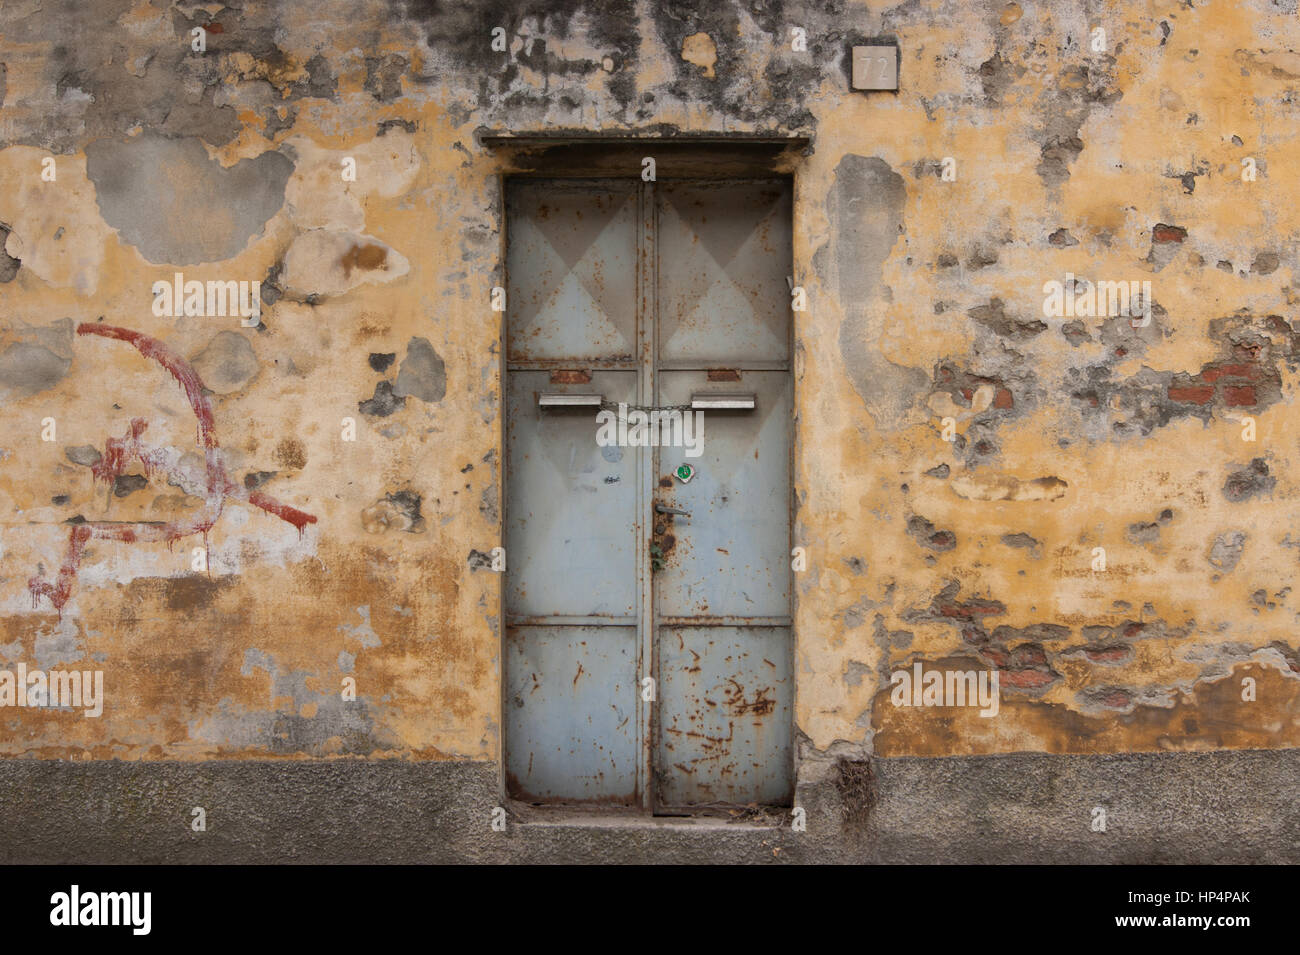 Alte rostige Metalltür mit Hammer und Sichel kommunistische Graffiti auf eine abgebrochene Mauer in Norditalien Stockfoto